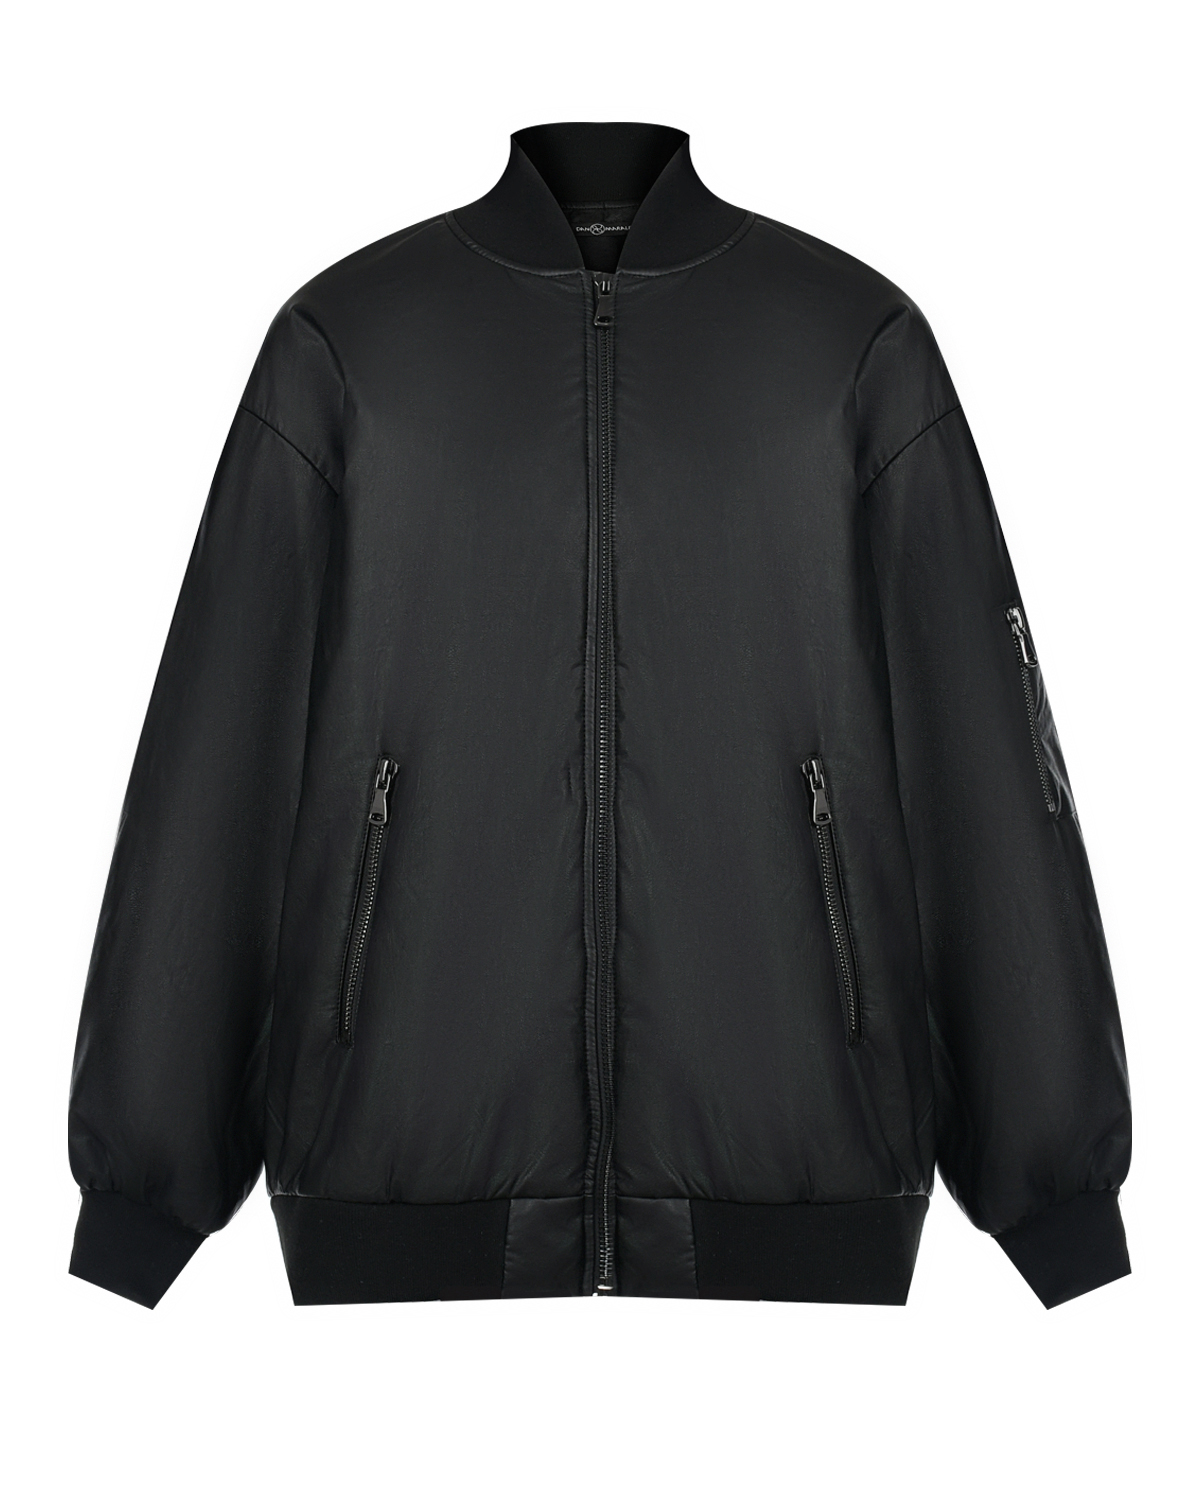 Куртка-бомбер из эко-кожи Dan Maralex, размер 44, цвет черный - фото 1